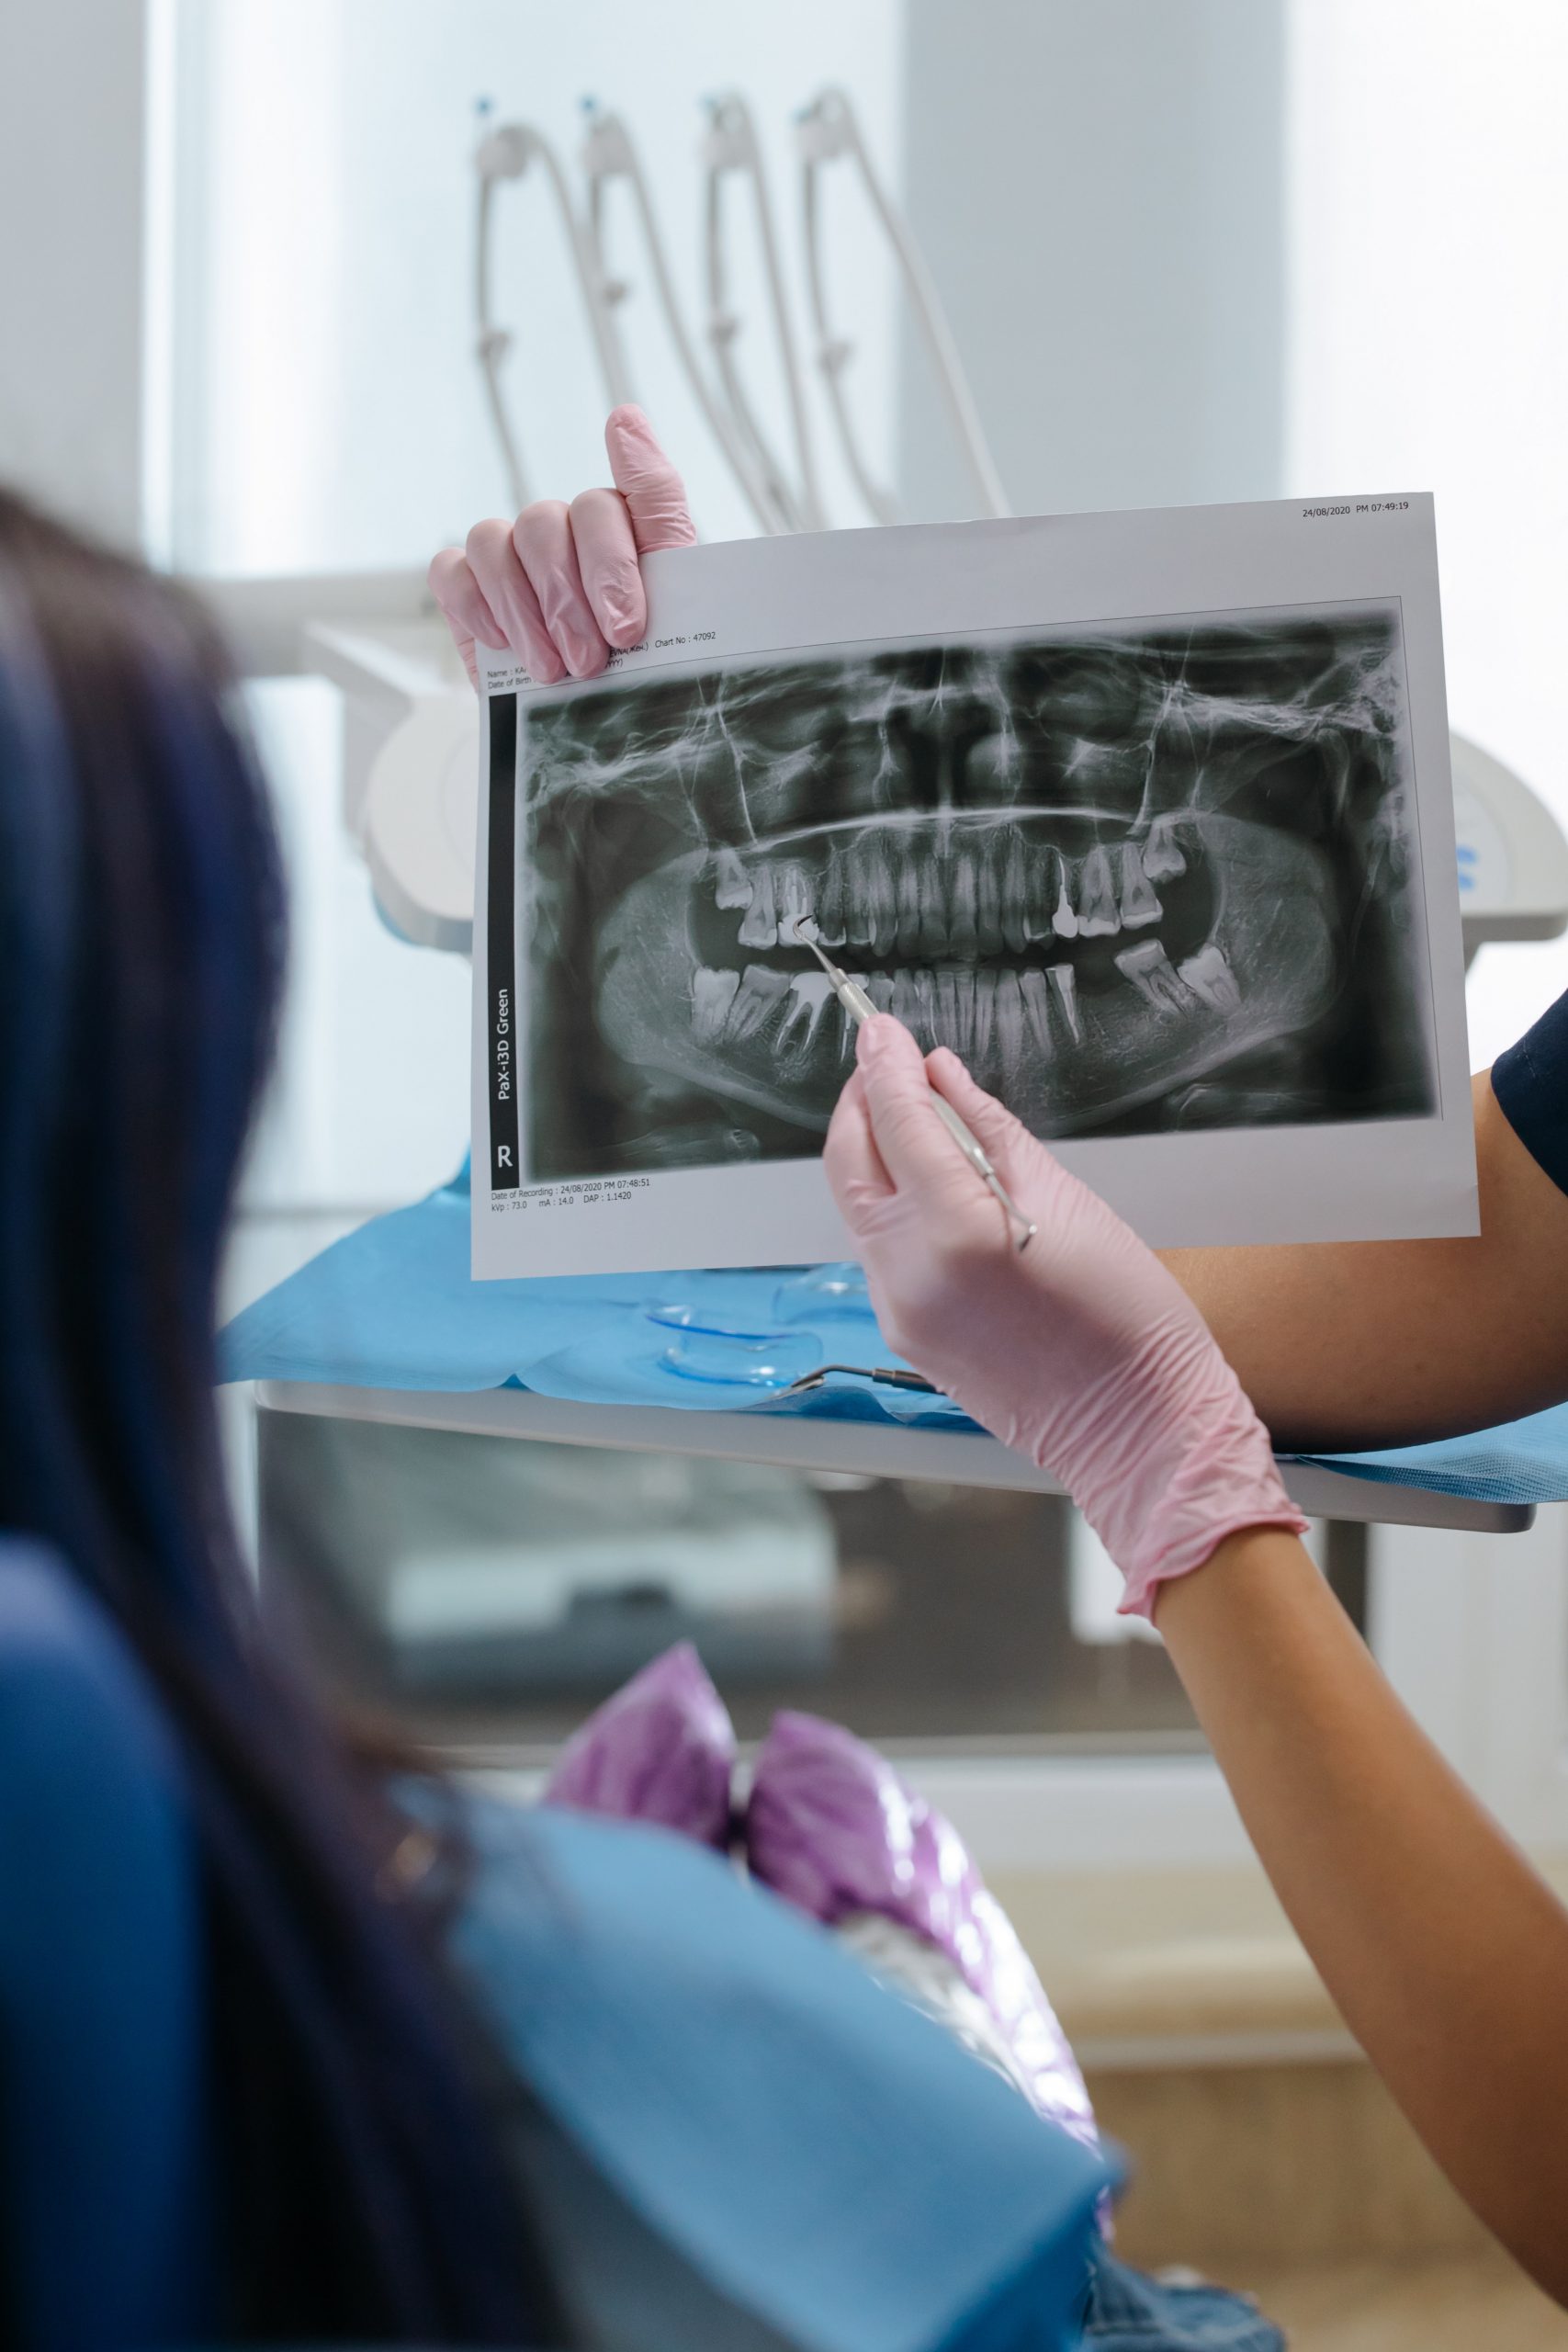 Het belang van regelmatig                        bezoek aan de tandarts